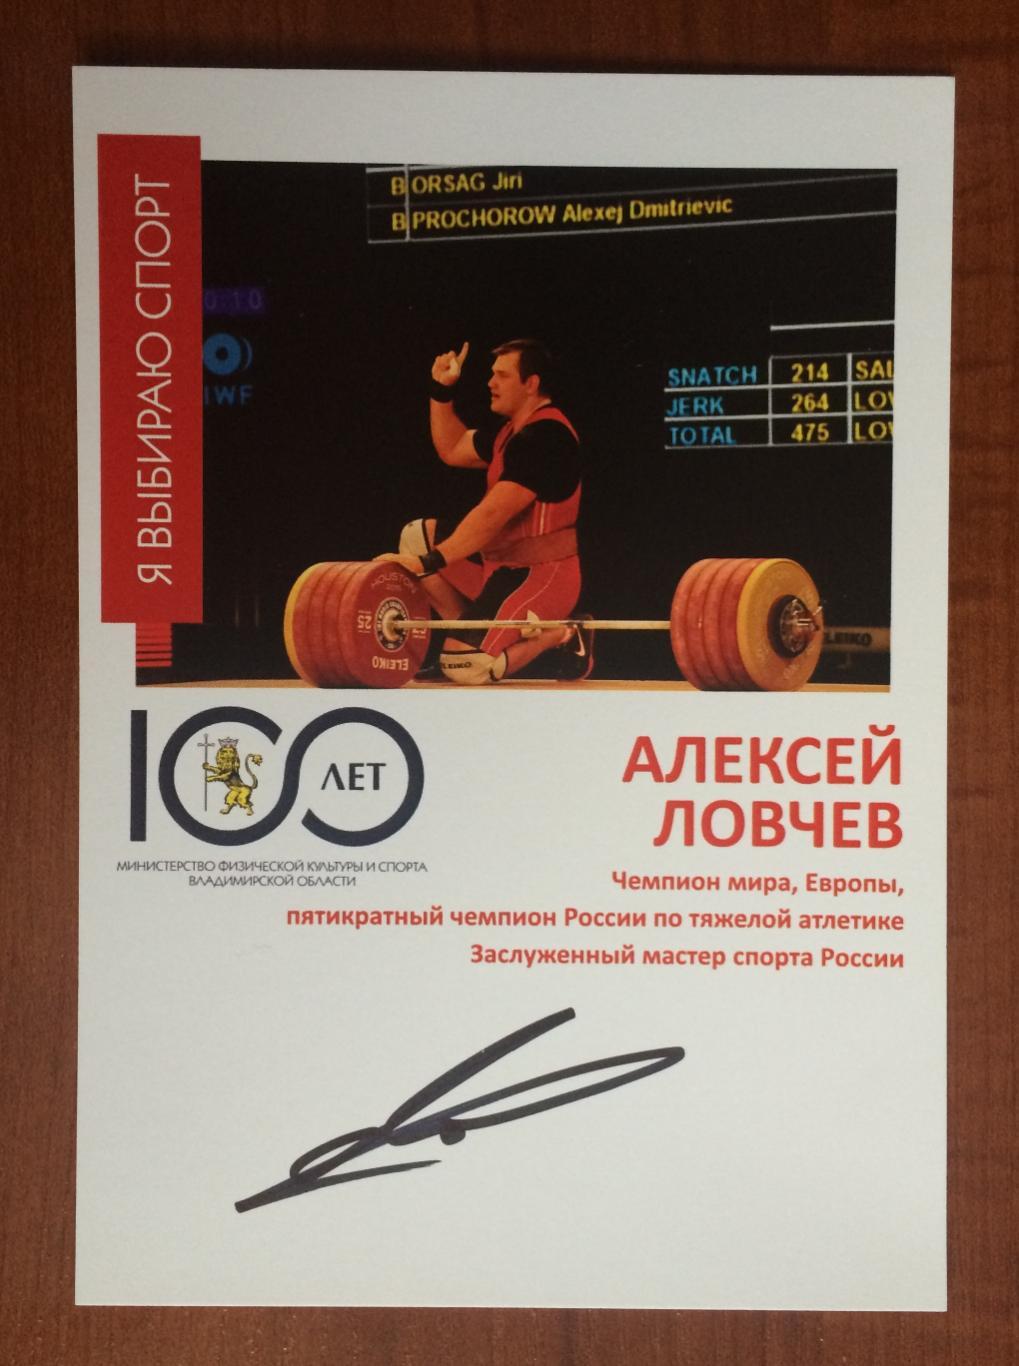 Автограф Алексей Ловчев тяжелая атлетика Чемпионат Европы золото 2014 год 1